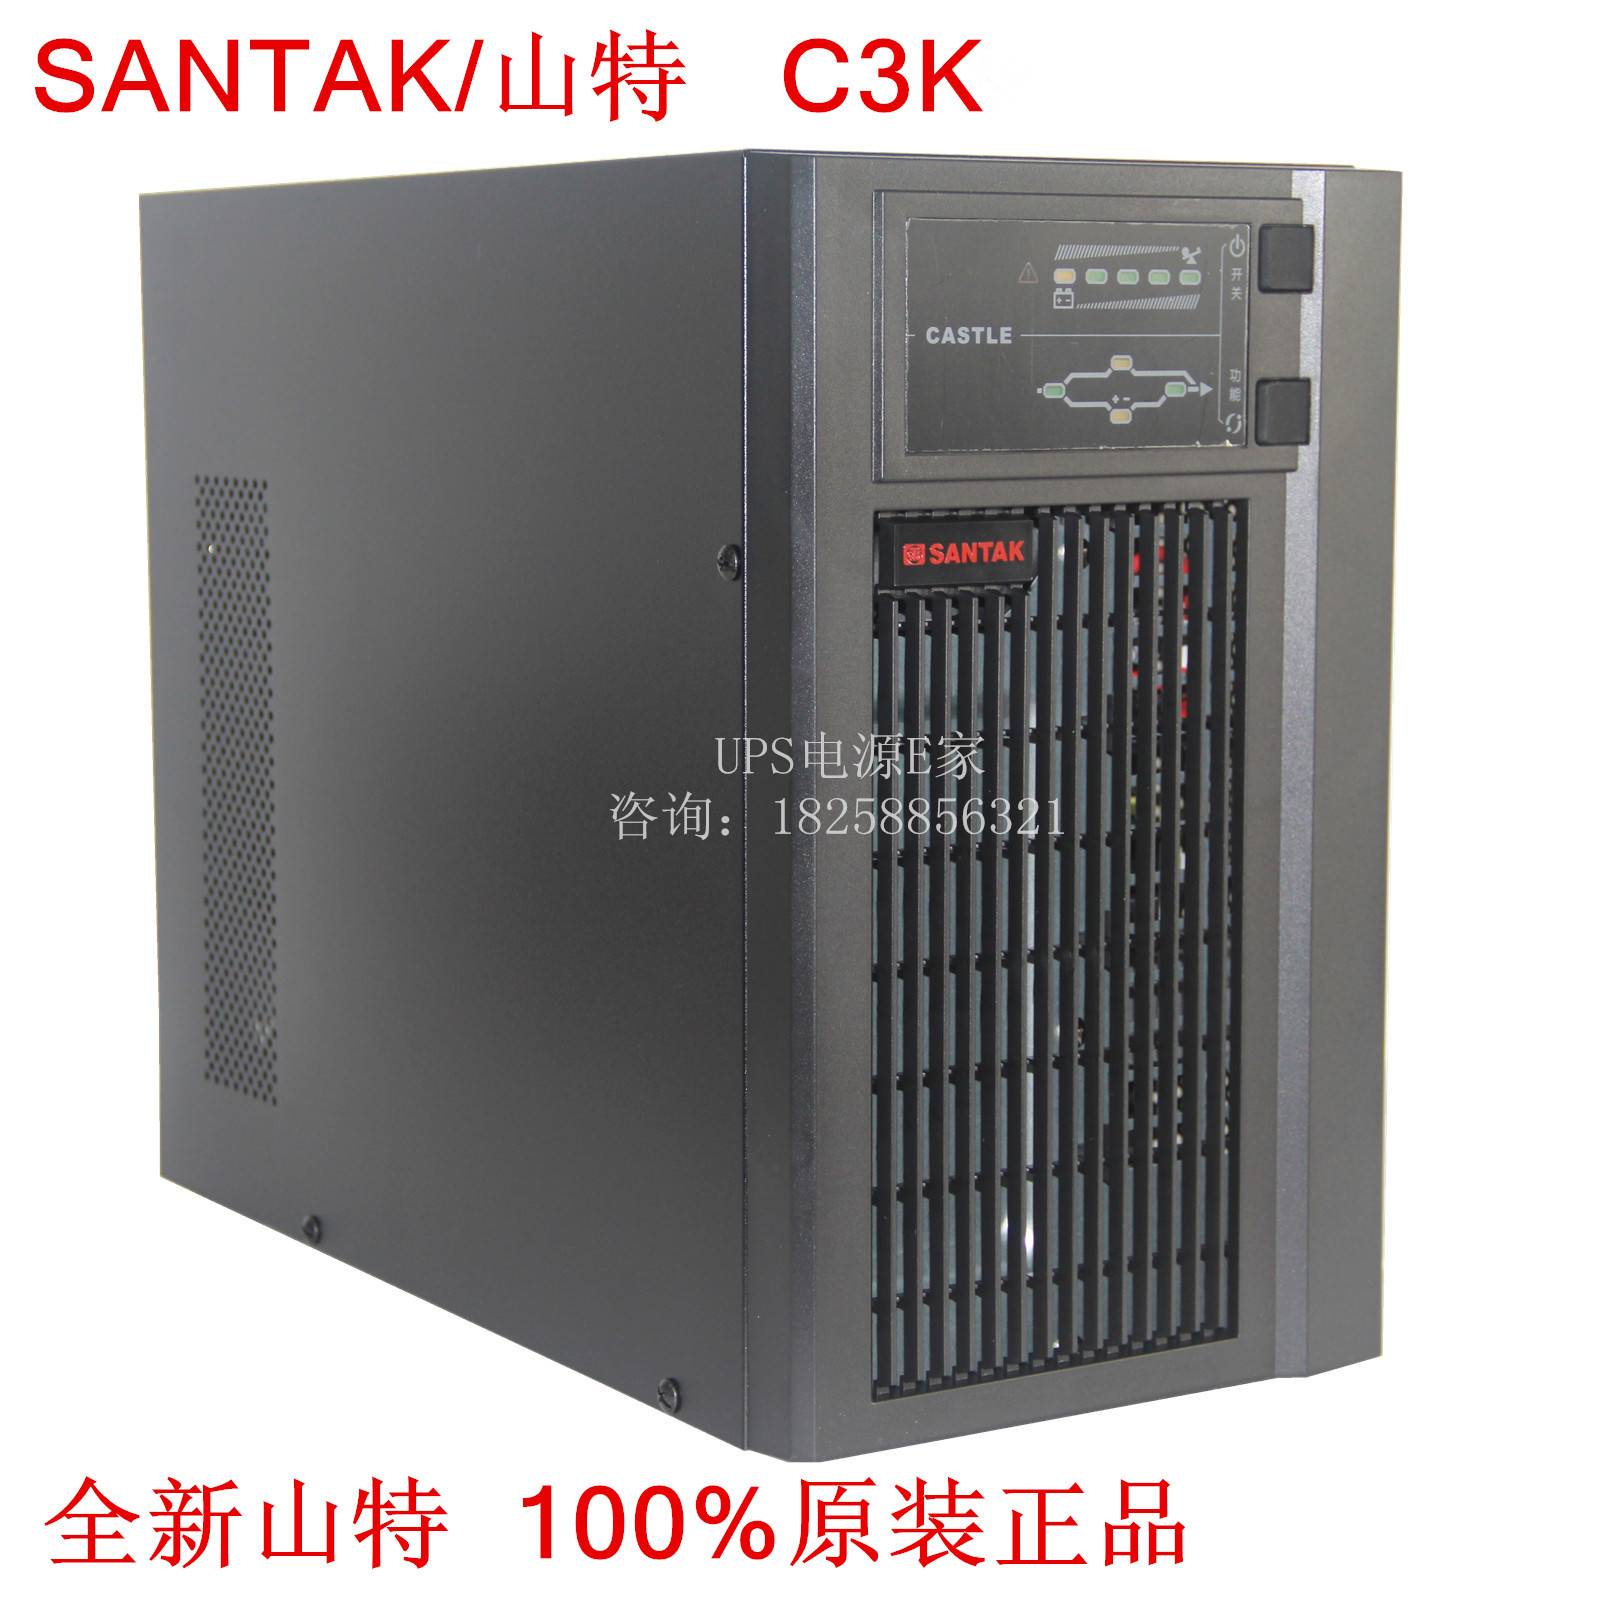 SANTAK Shenzhen Shante UPS Uninterruptible Power Supply C3K Online 3KVA/2400W CASTLE 3K (6G)